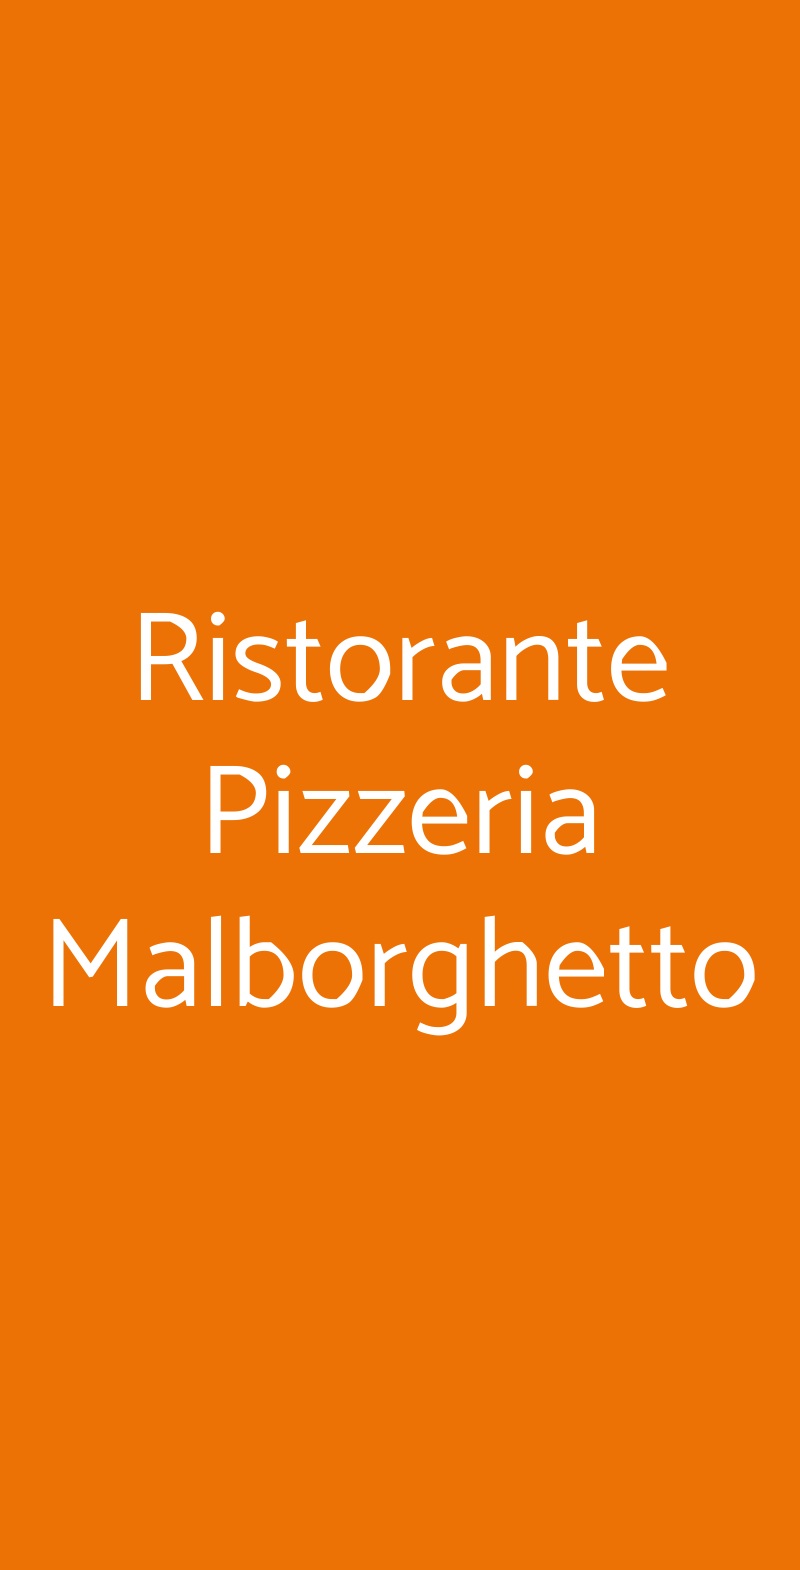 Ristorante Pizzeria Malborghetto Siena menù 1 pagina